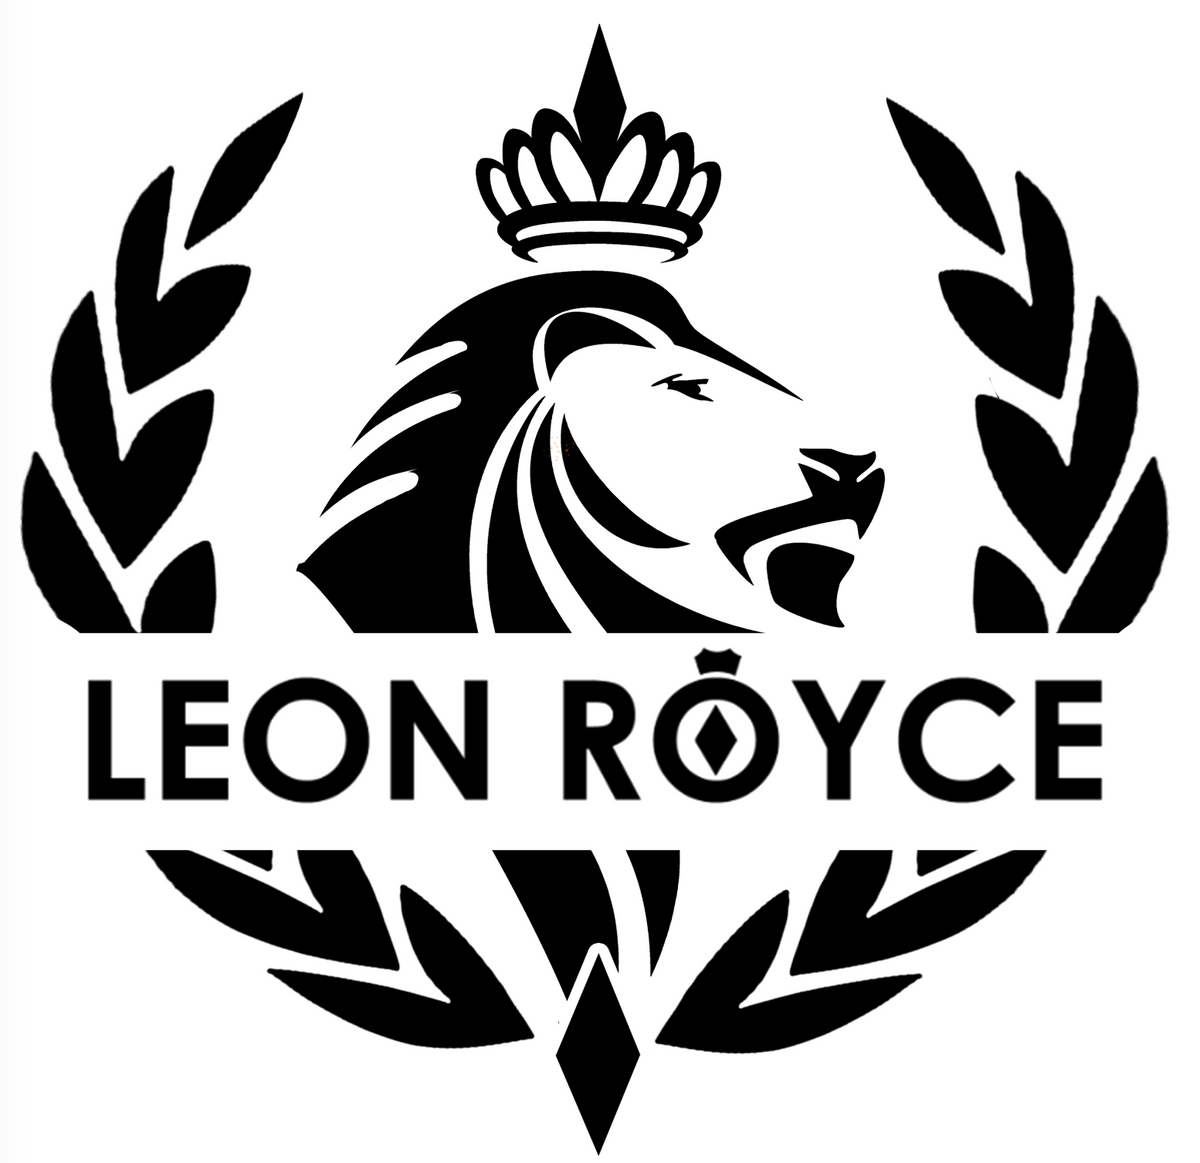 Leon Royce